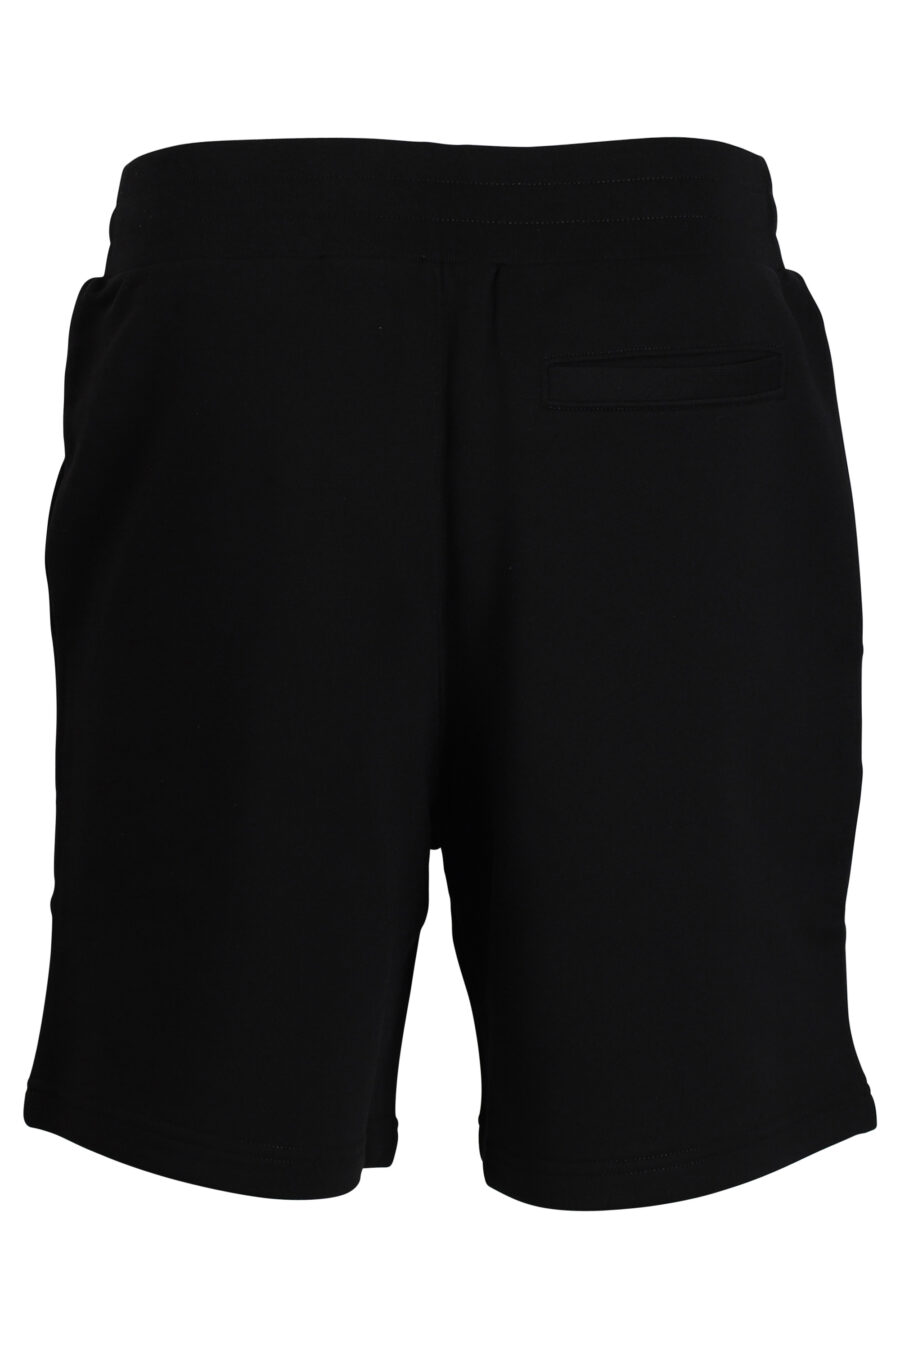 Pantalón de chándal negro corto con logo doble "smiley" - 667112821642 3